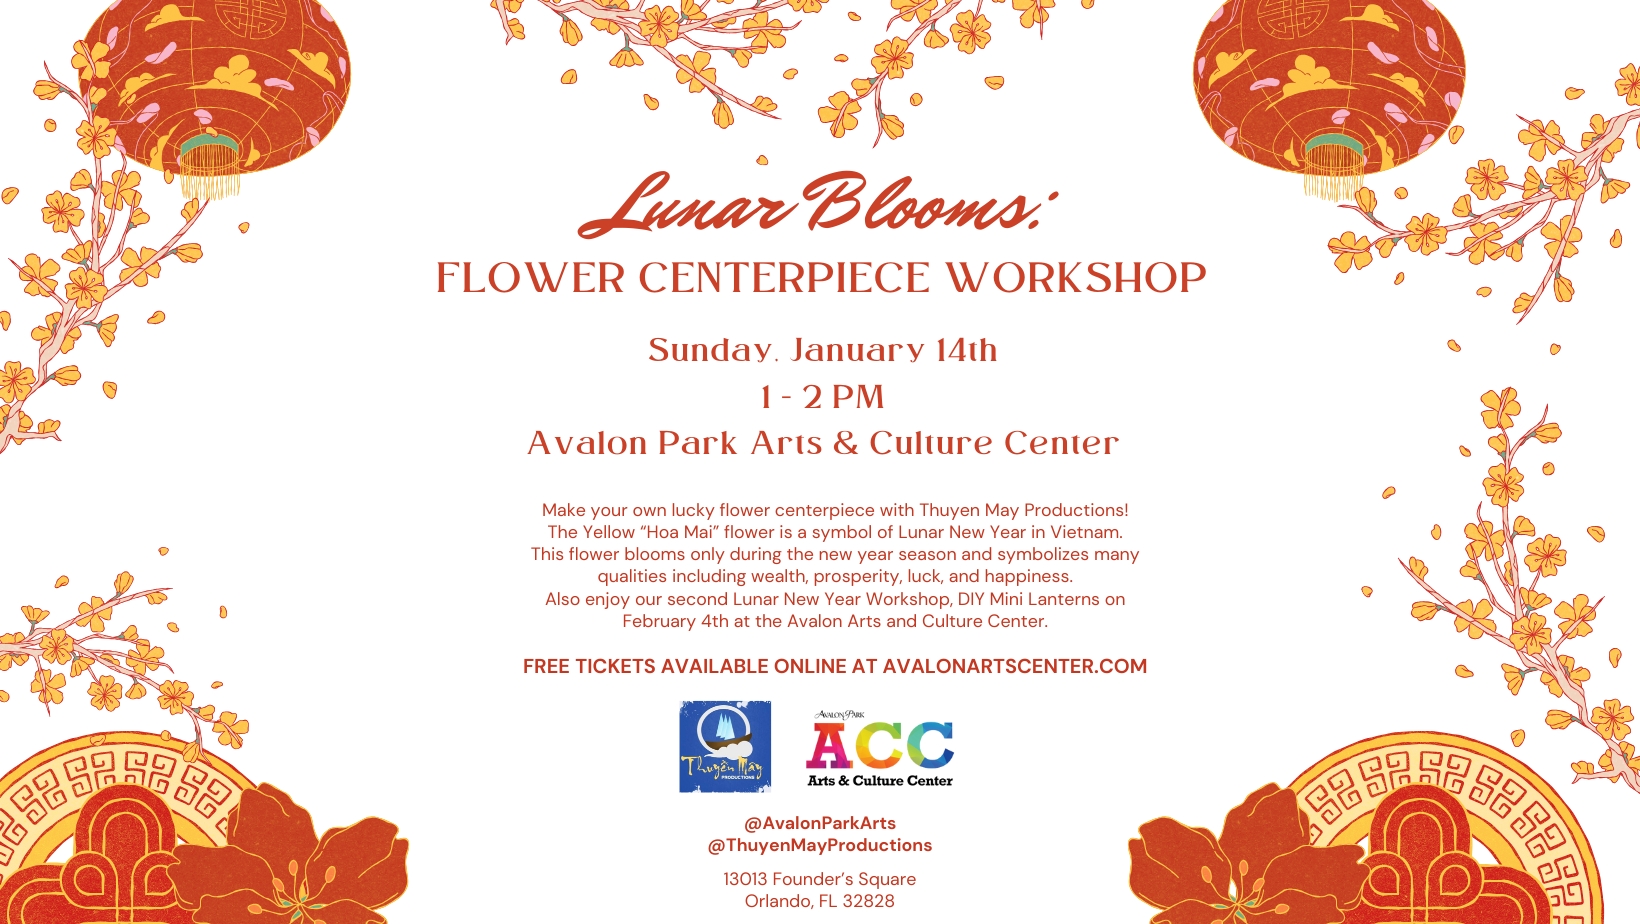 Lunar Blooms:  Flower Centerpiece Workshop